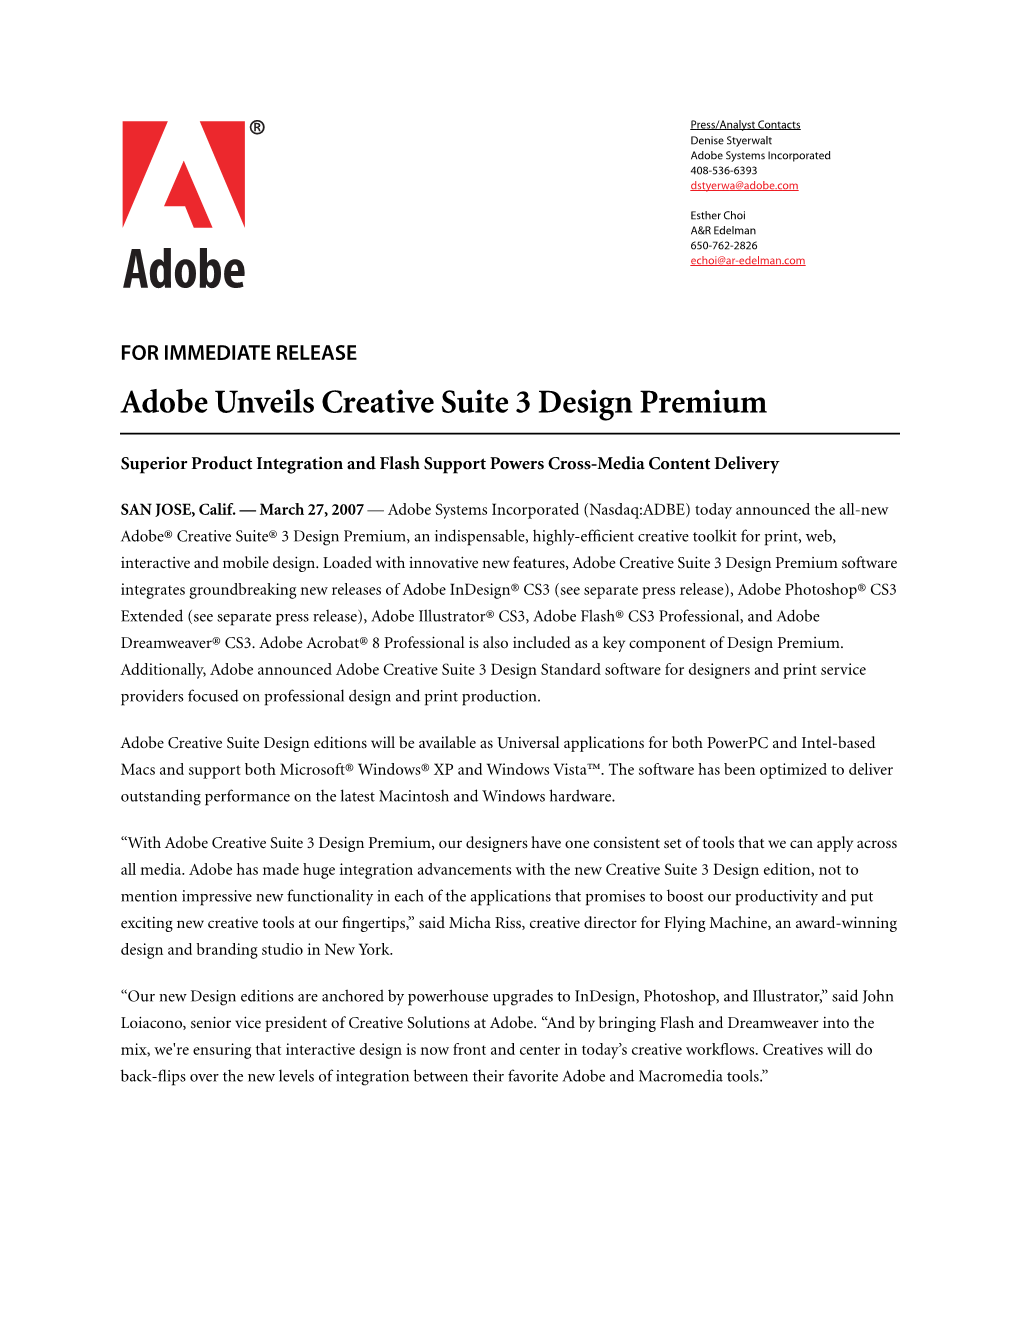 Adobe Unveils Creative Suite 3 Design Premium